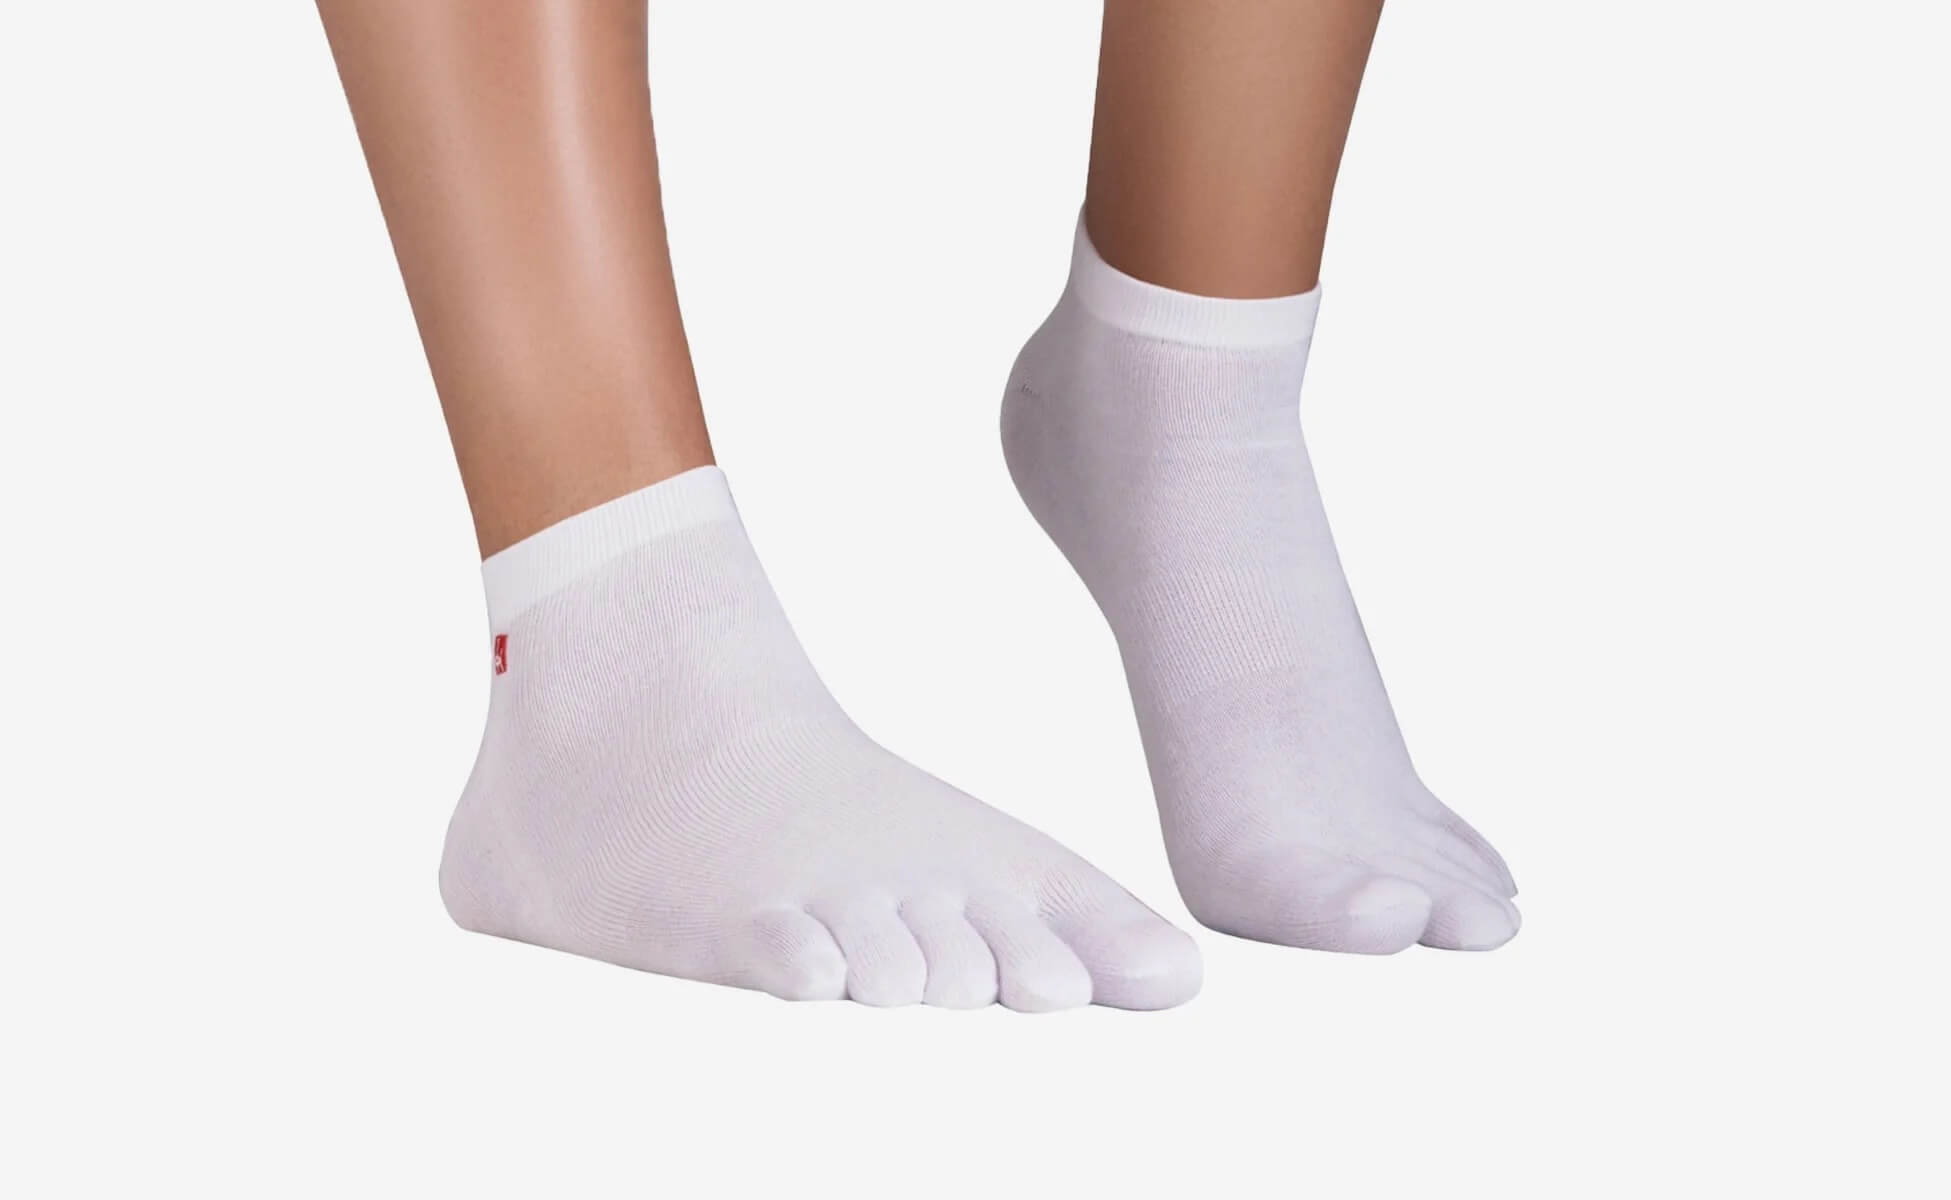 Toe Socks Relax (1 Pair Pack) - Black ǀ Feelgrounds